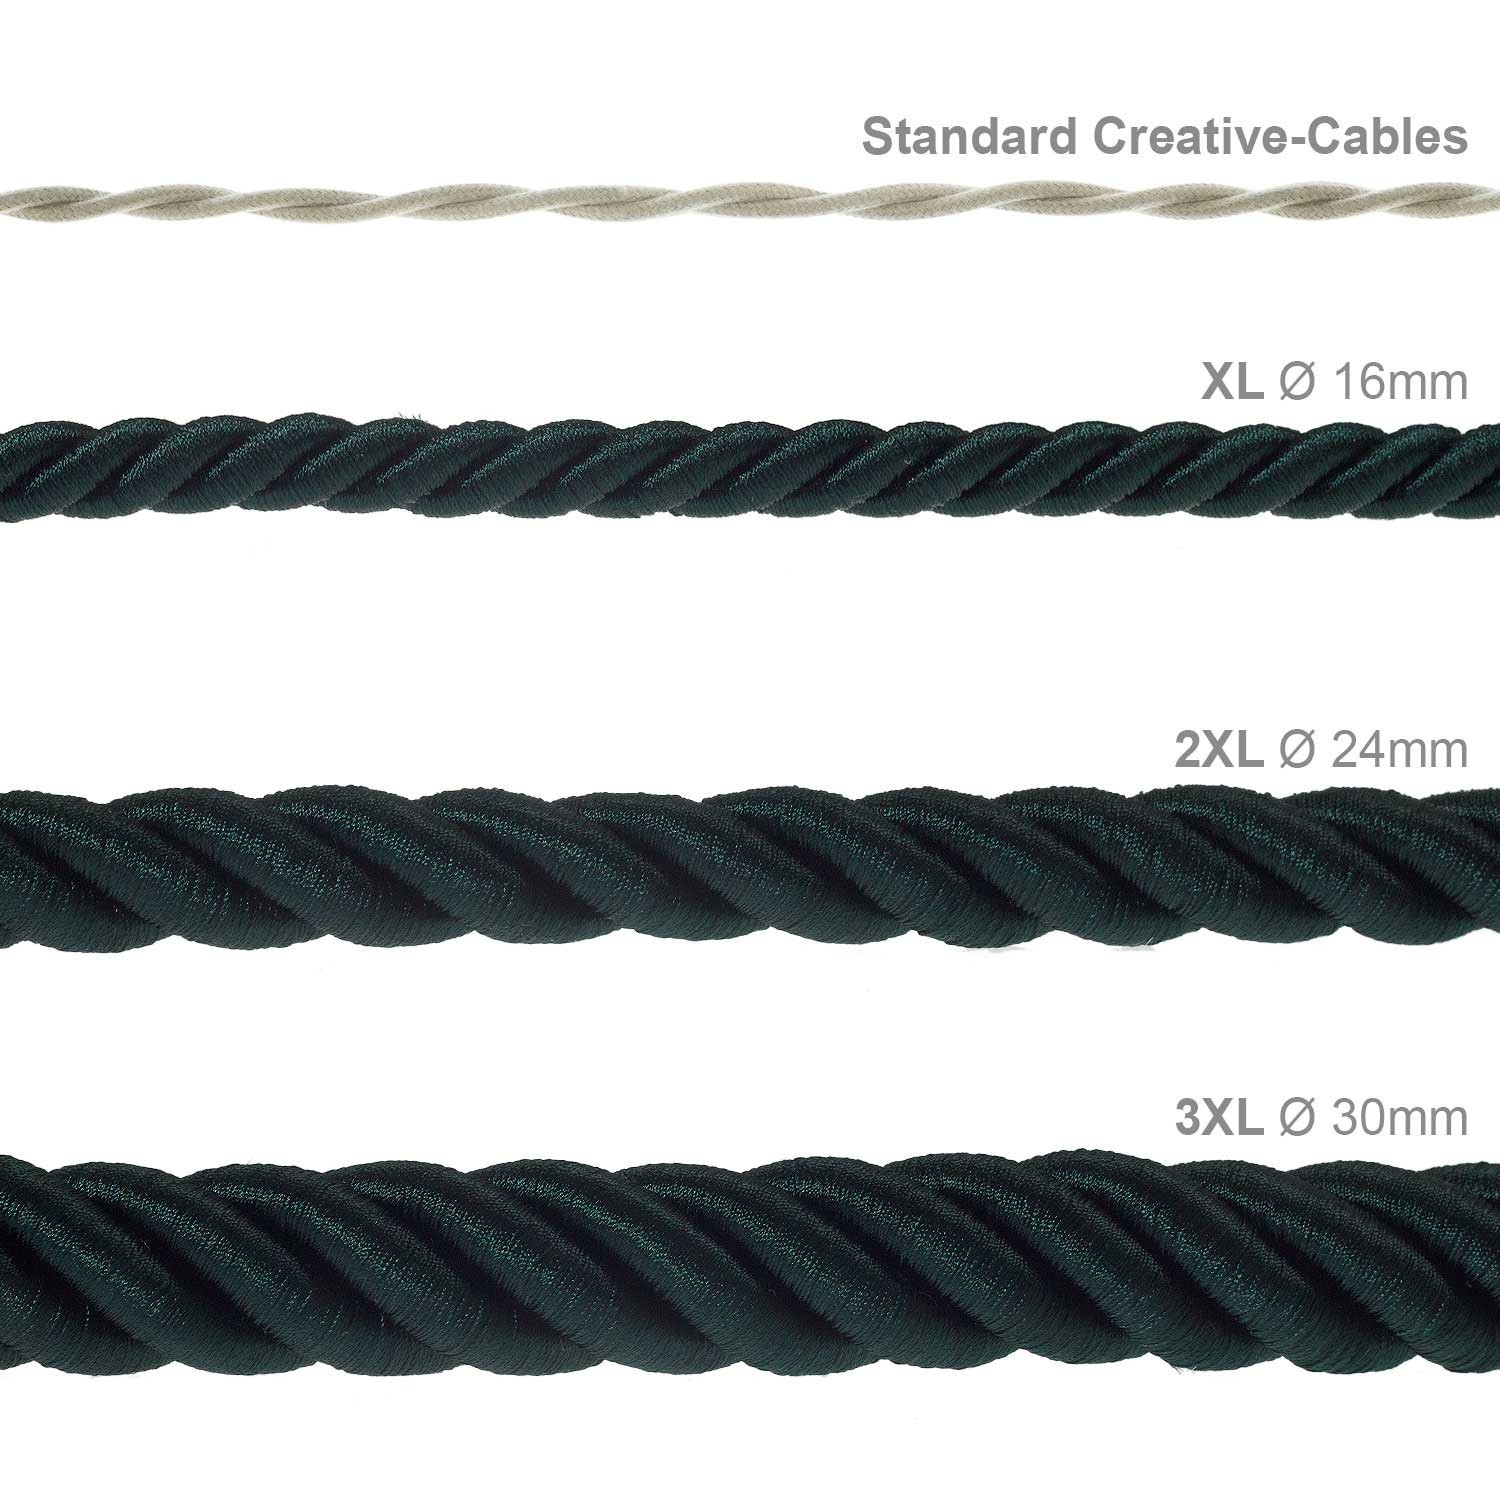 Cordón XL, cable eléctrico 3x0,75, recubierto en tejido verde oscuro brillante. Diámetro: 16mm.